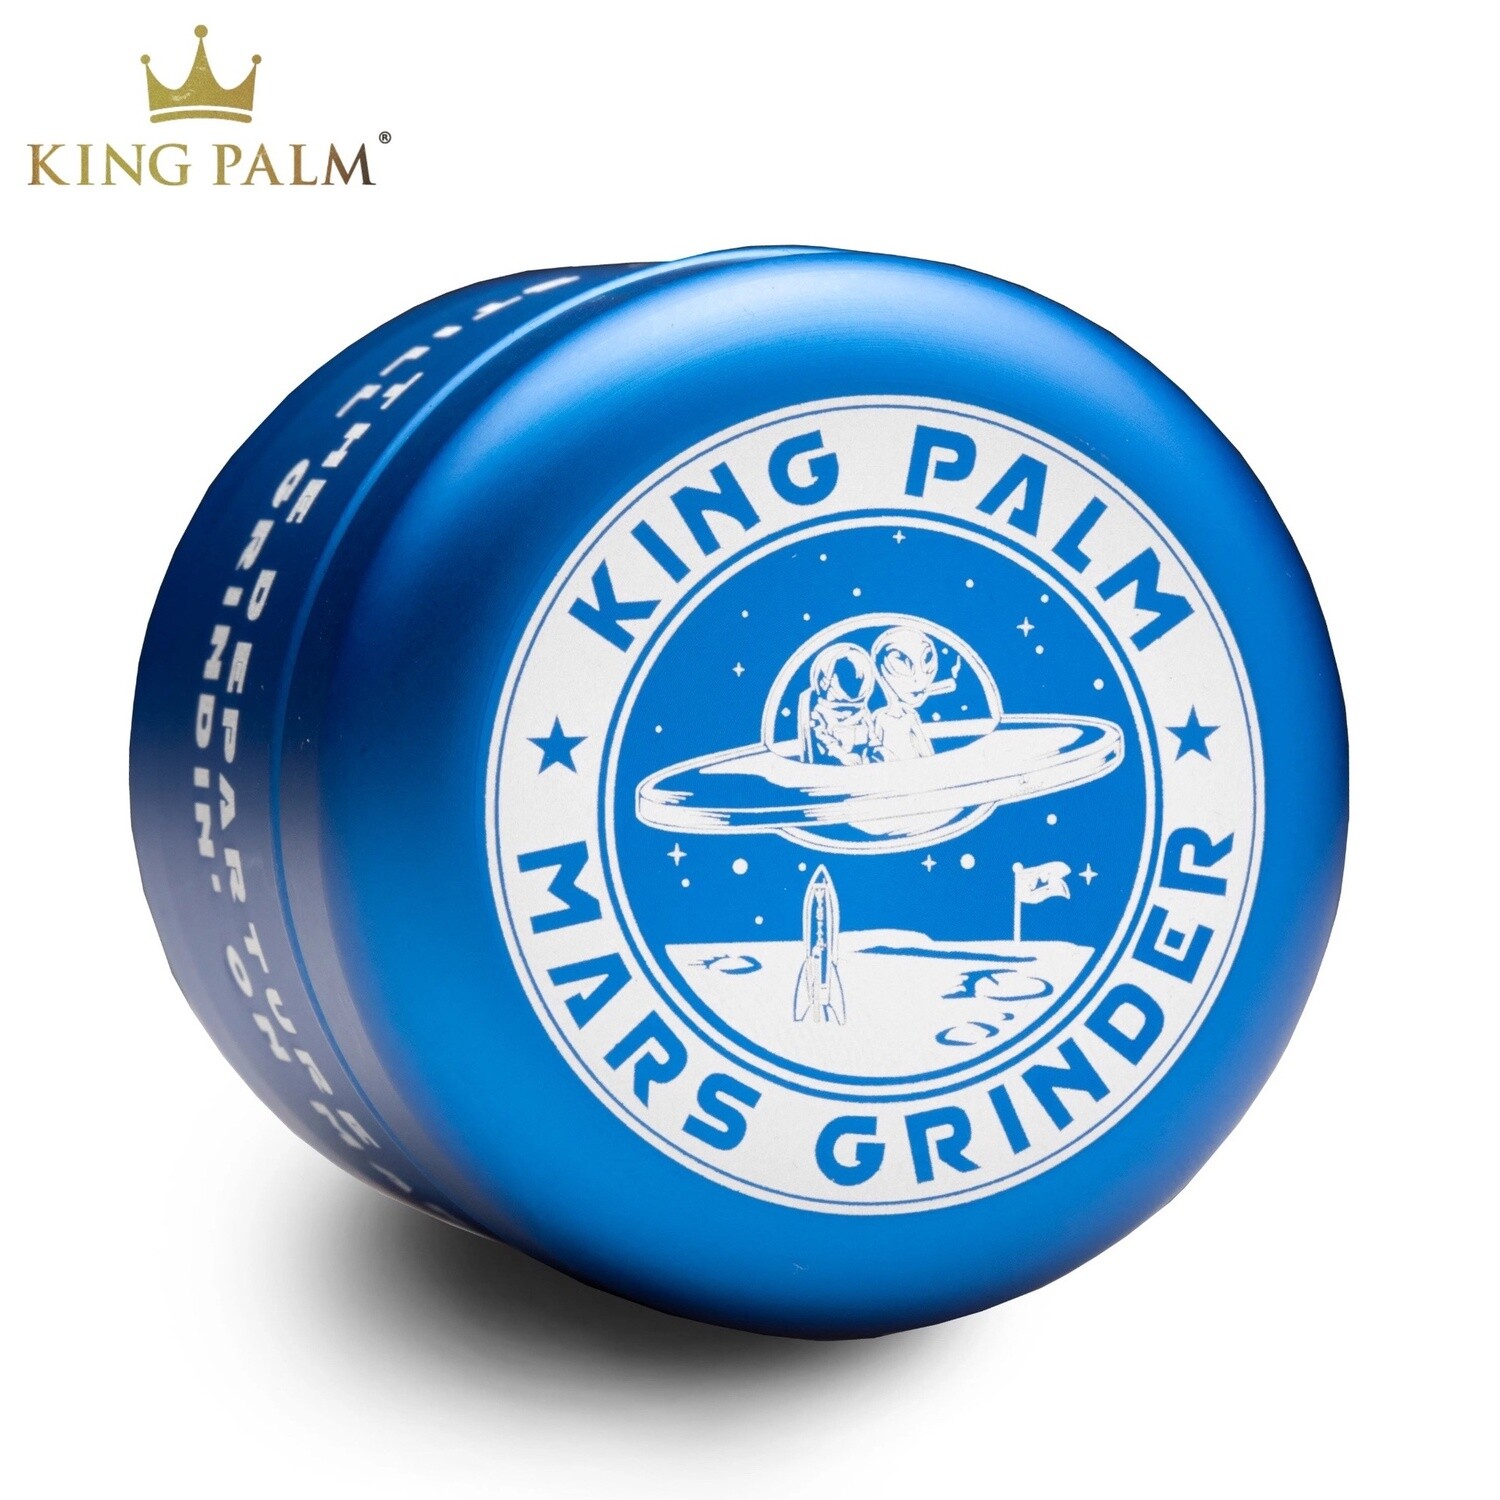 King Palm® Mars Grinder (Blue)